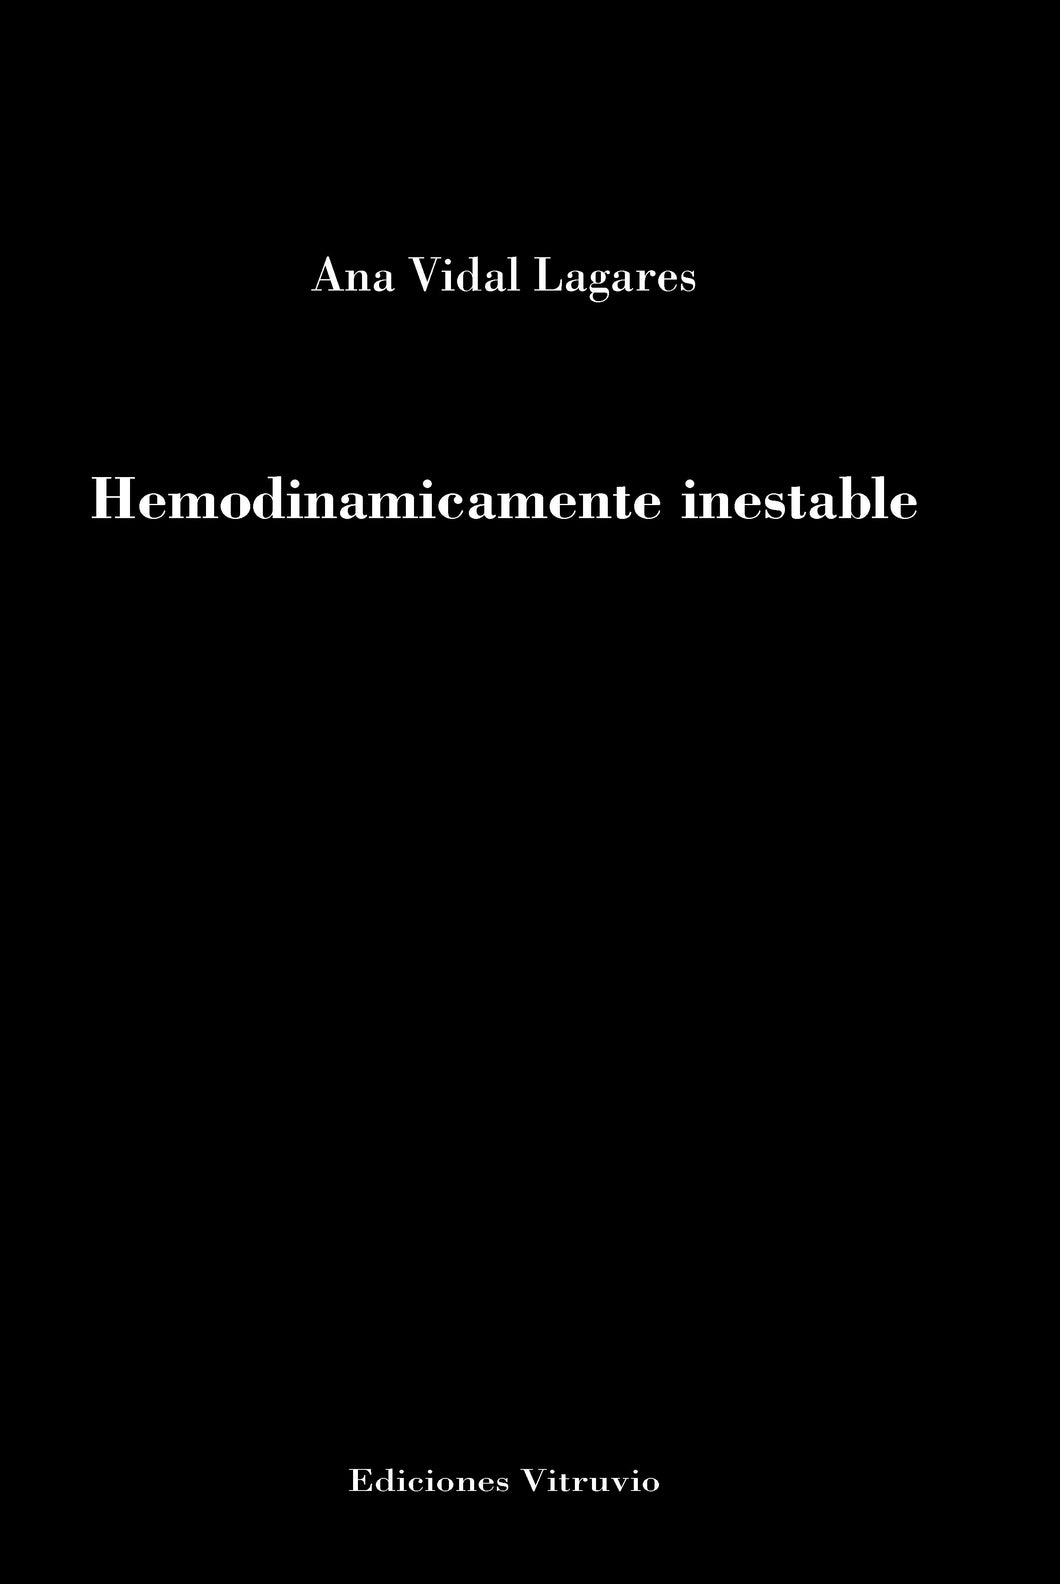 Hemodinamicamente inestable, de Ana Vidal Lagares